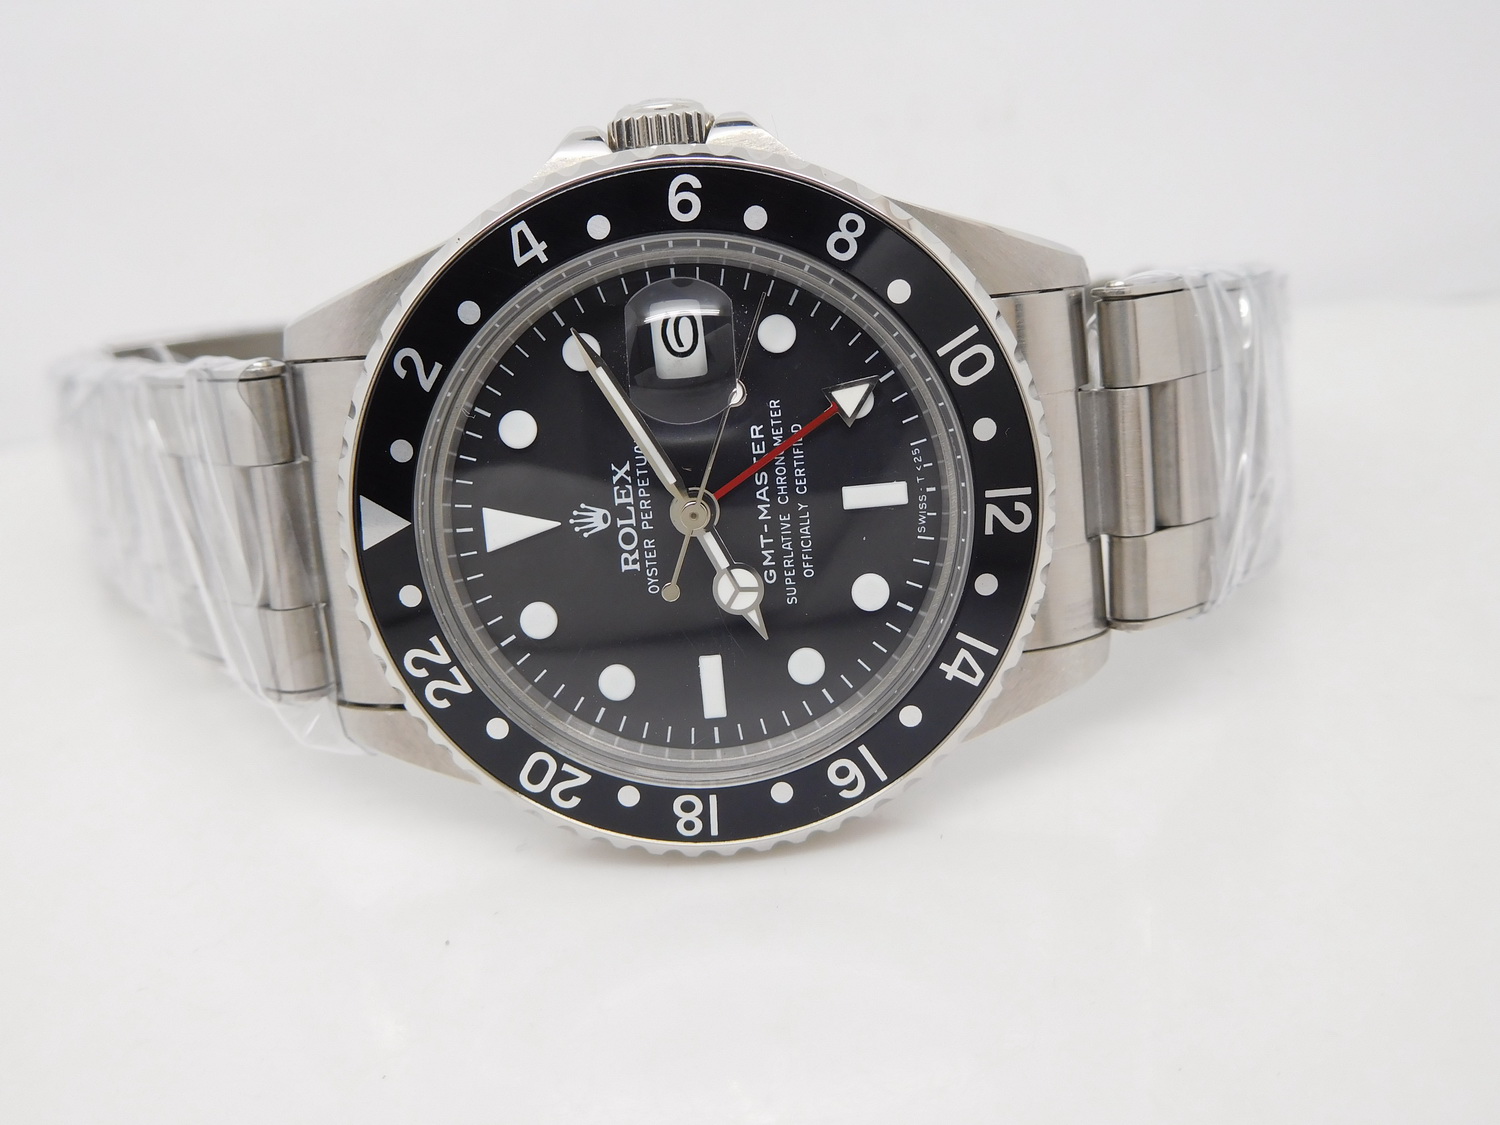 The Best Vintage GMT-Master Watch â BP Factory Replica Rolex GMT-Master 1675 â Hot Spot on 